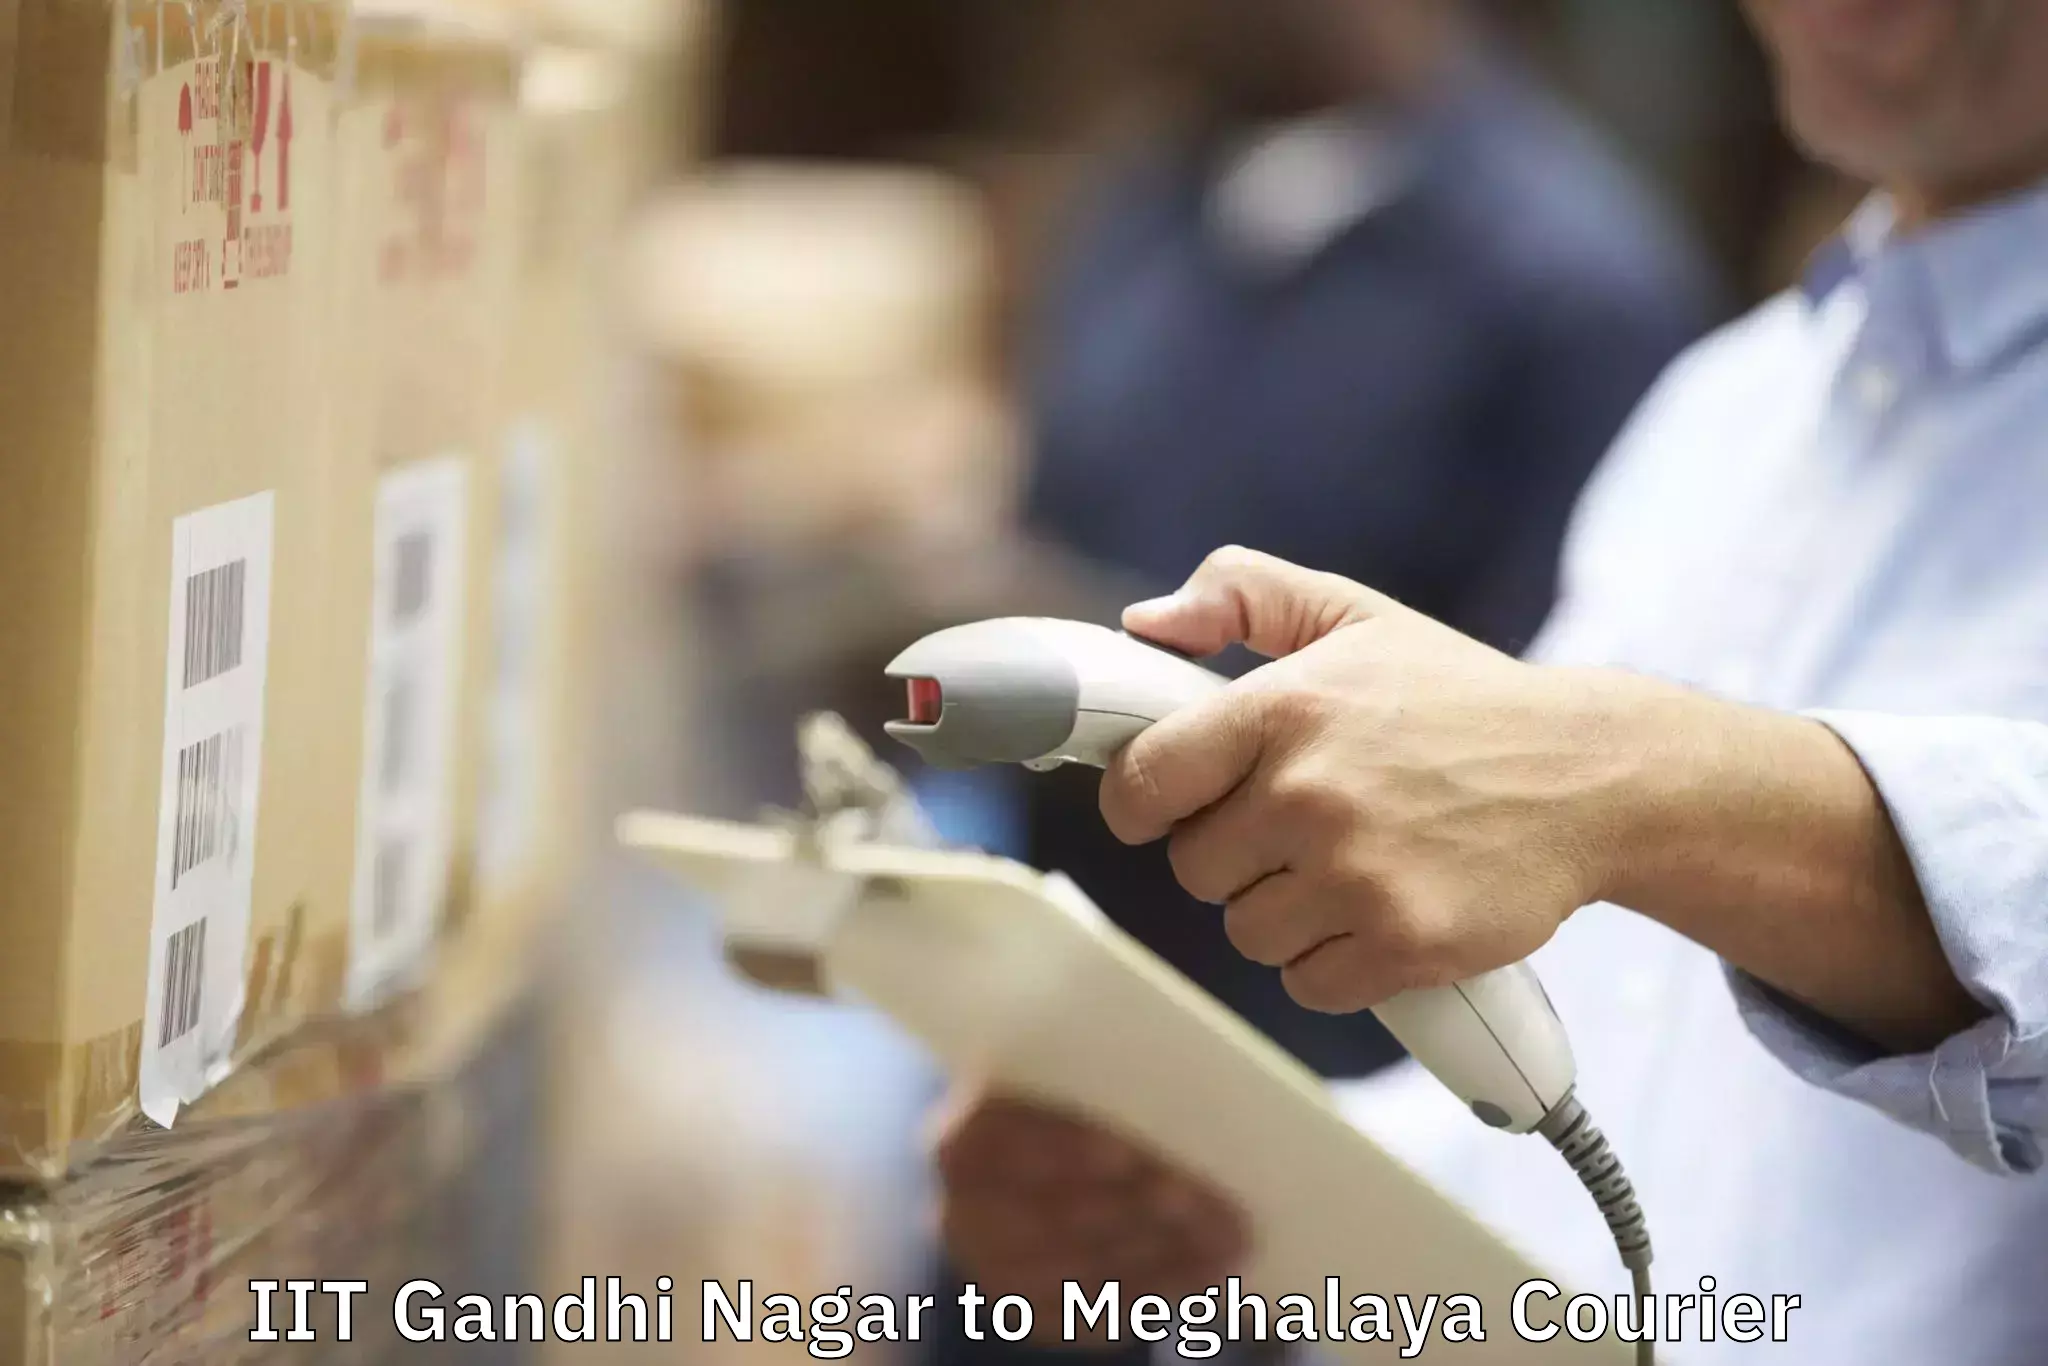 Furniture moving experts in IIT Gandhi Nagar to Meghalaya